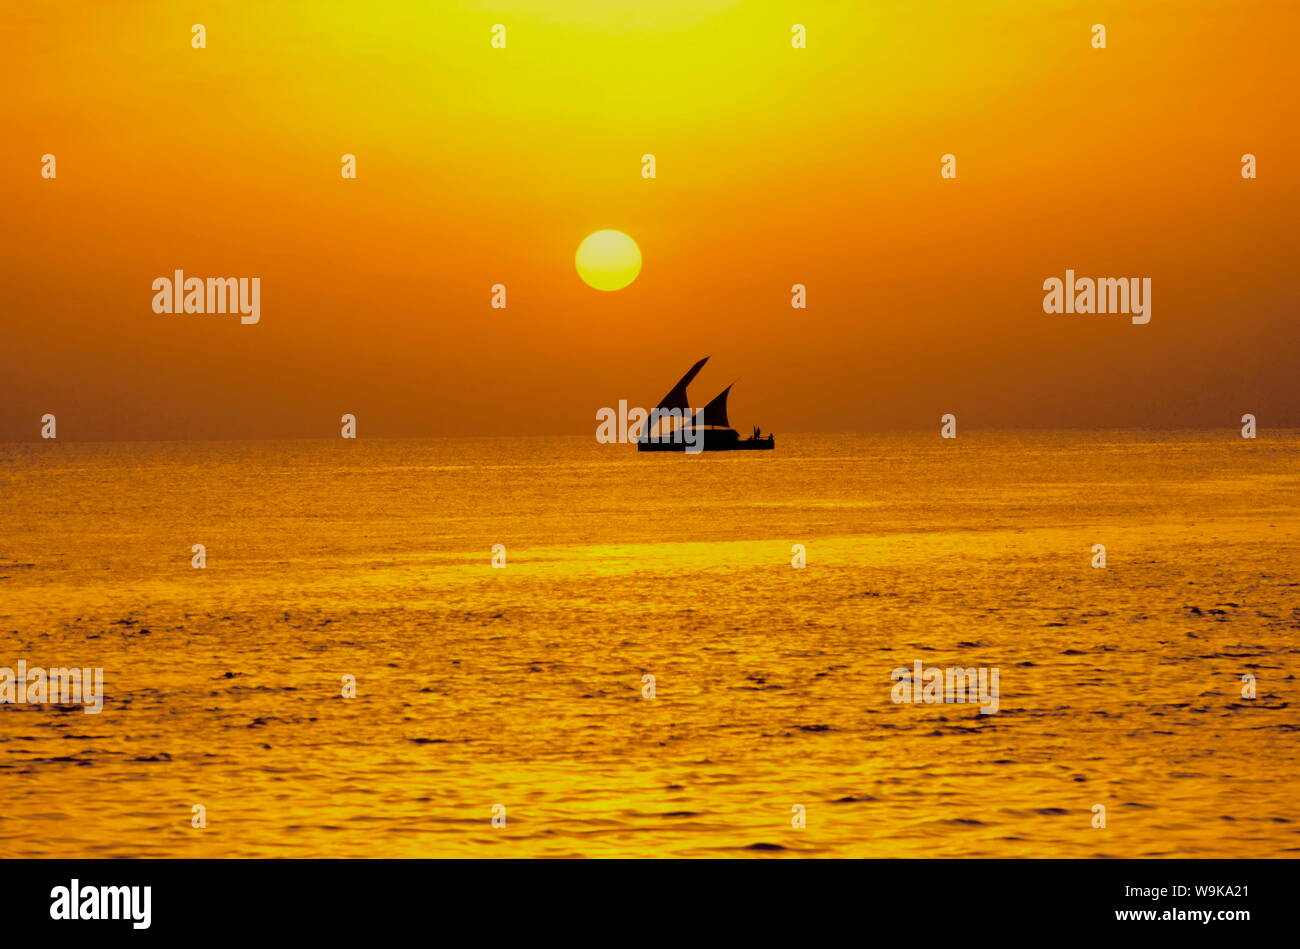 Dhoni tradizionale barca a vela al tramonto, Maldive, Oceano Indiano, Asia Foto Stock